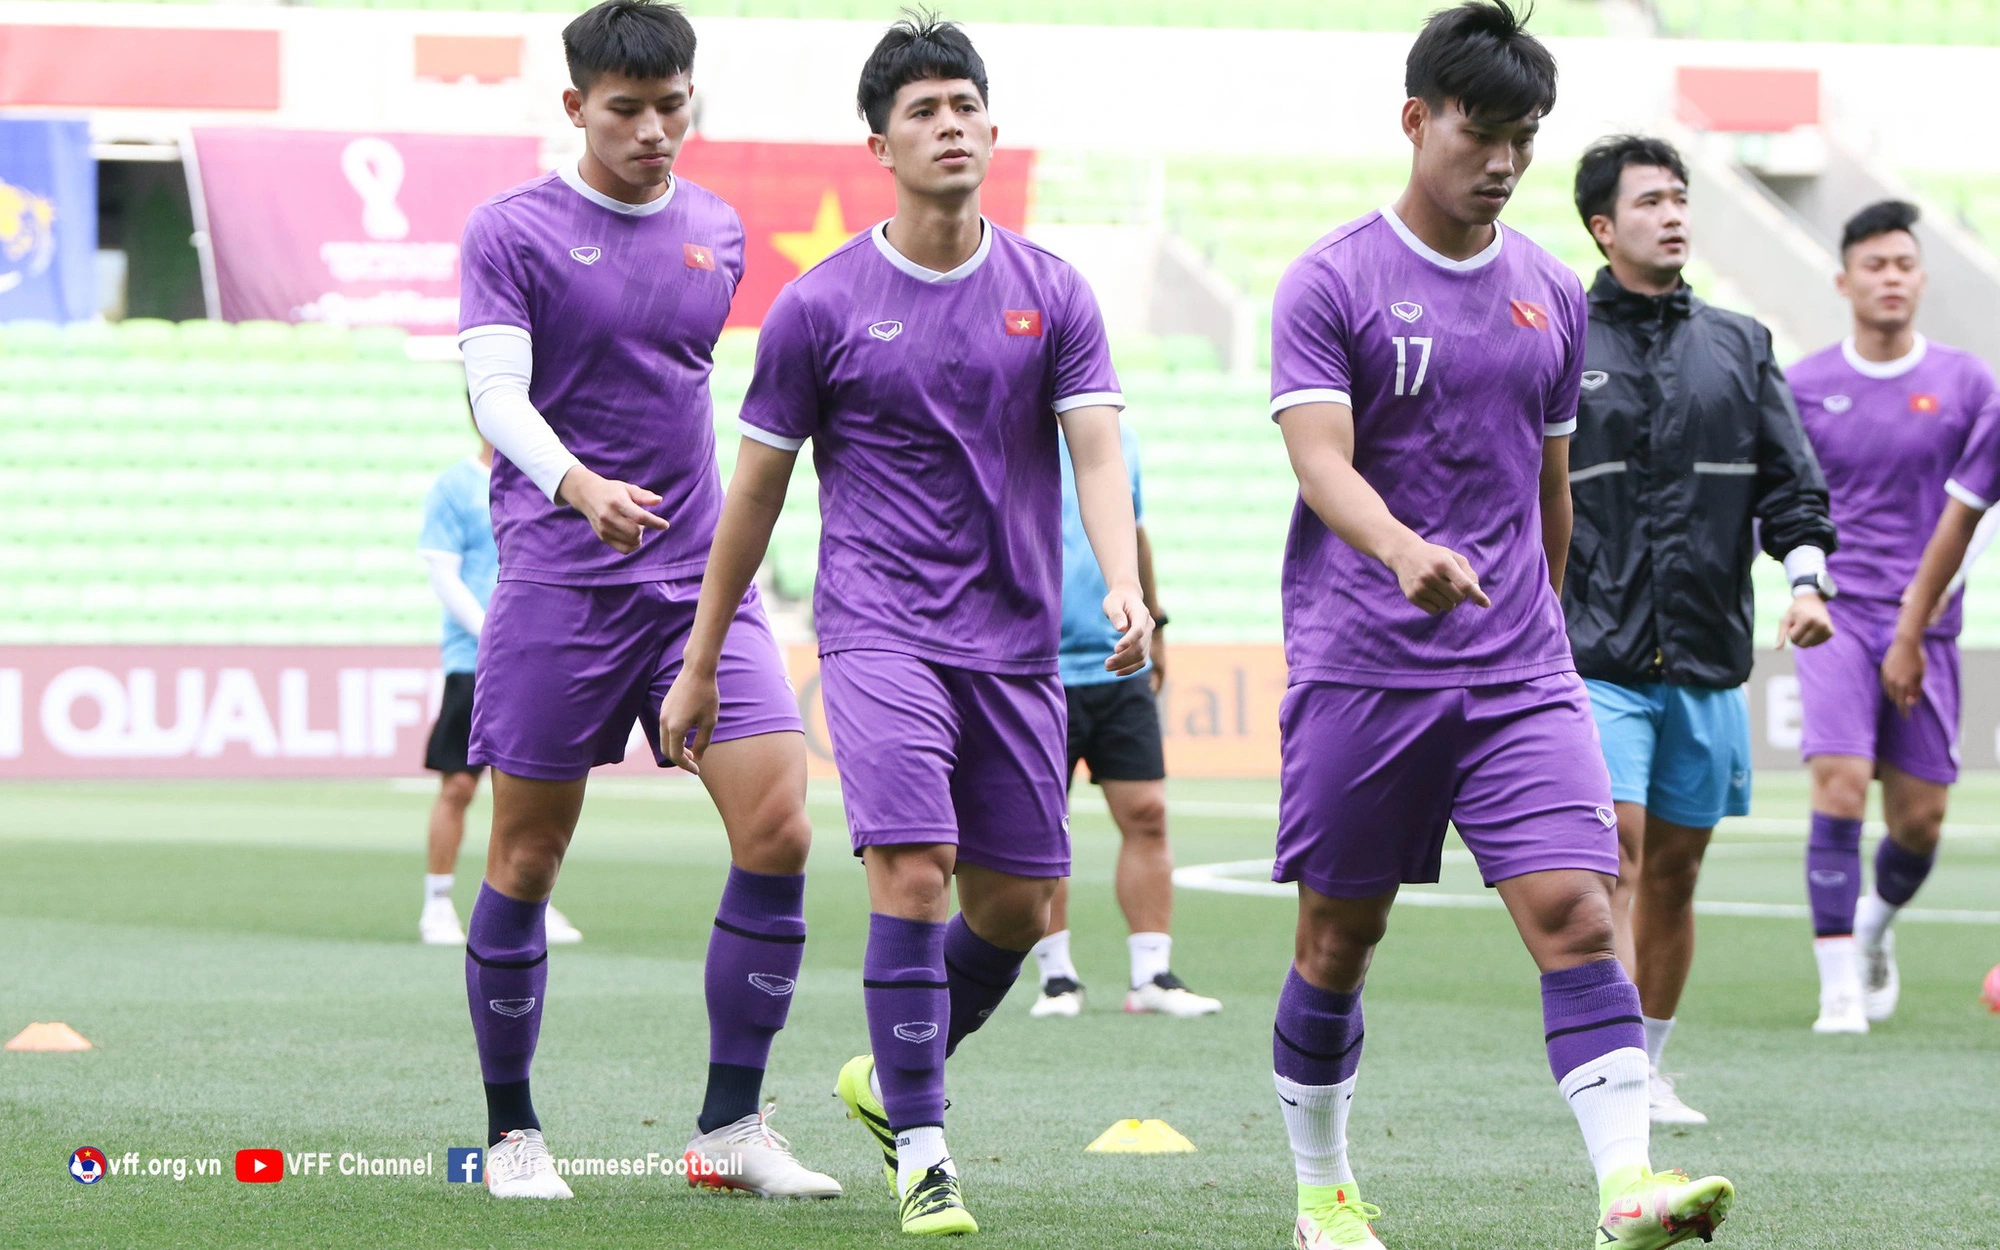 Trợ lý HLV Park Hang-seo: Sân thi đấu cực nhiều ruồi, mong tuyển Việt Nam có bàn thắng đẹp như "cầu vồng tuyết" của Quang Hải